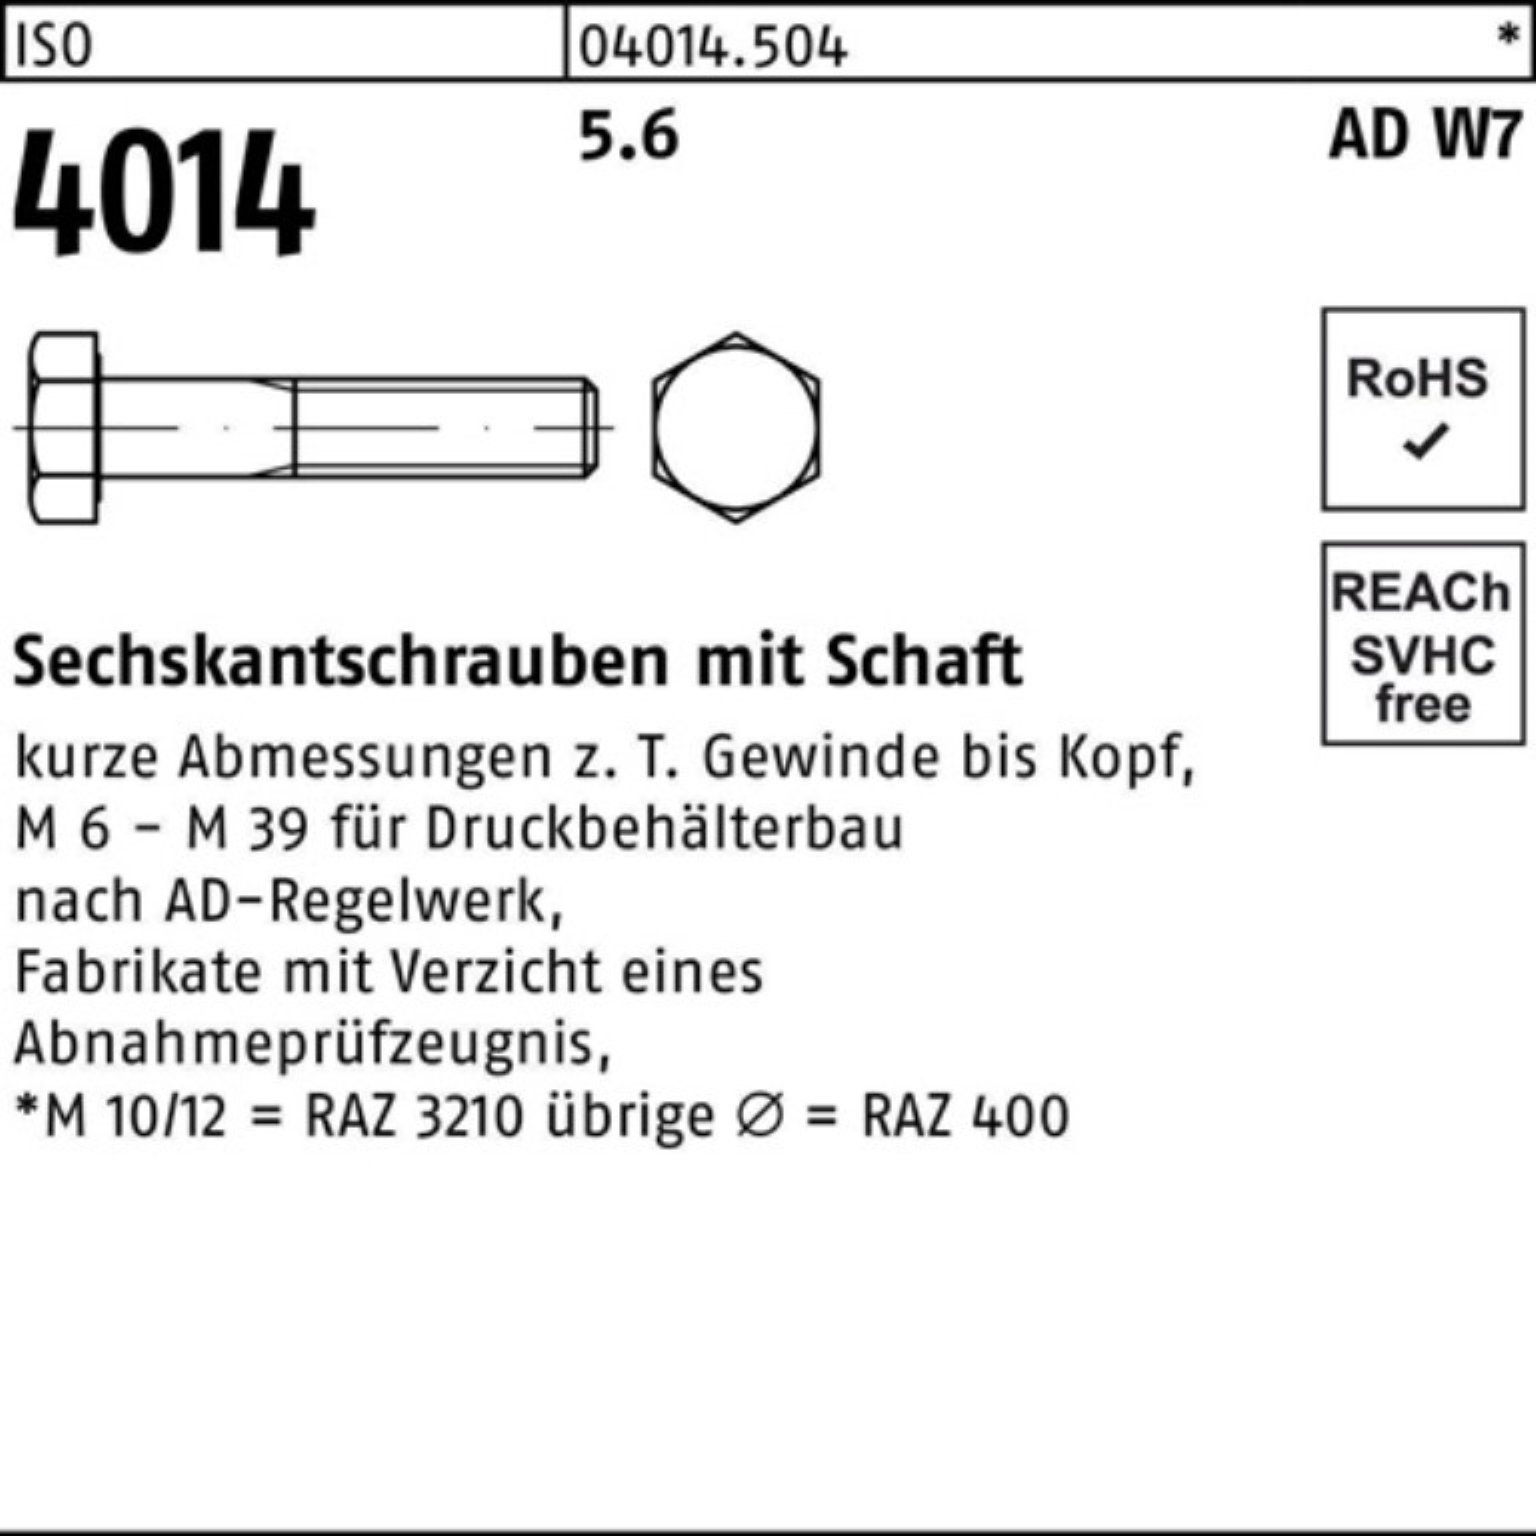 W7 Sechskantschraube M33x Schaft Bufab 100er ISO 4014 Stück Sechskantschraube 5.6 Pack 1 160